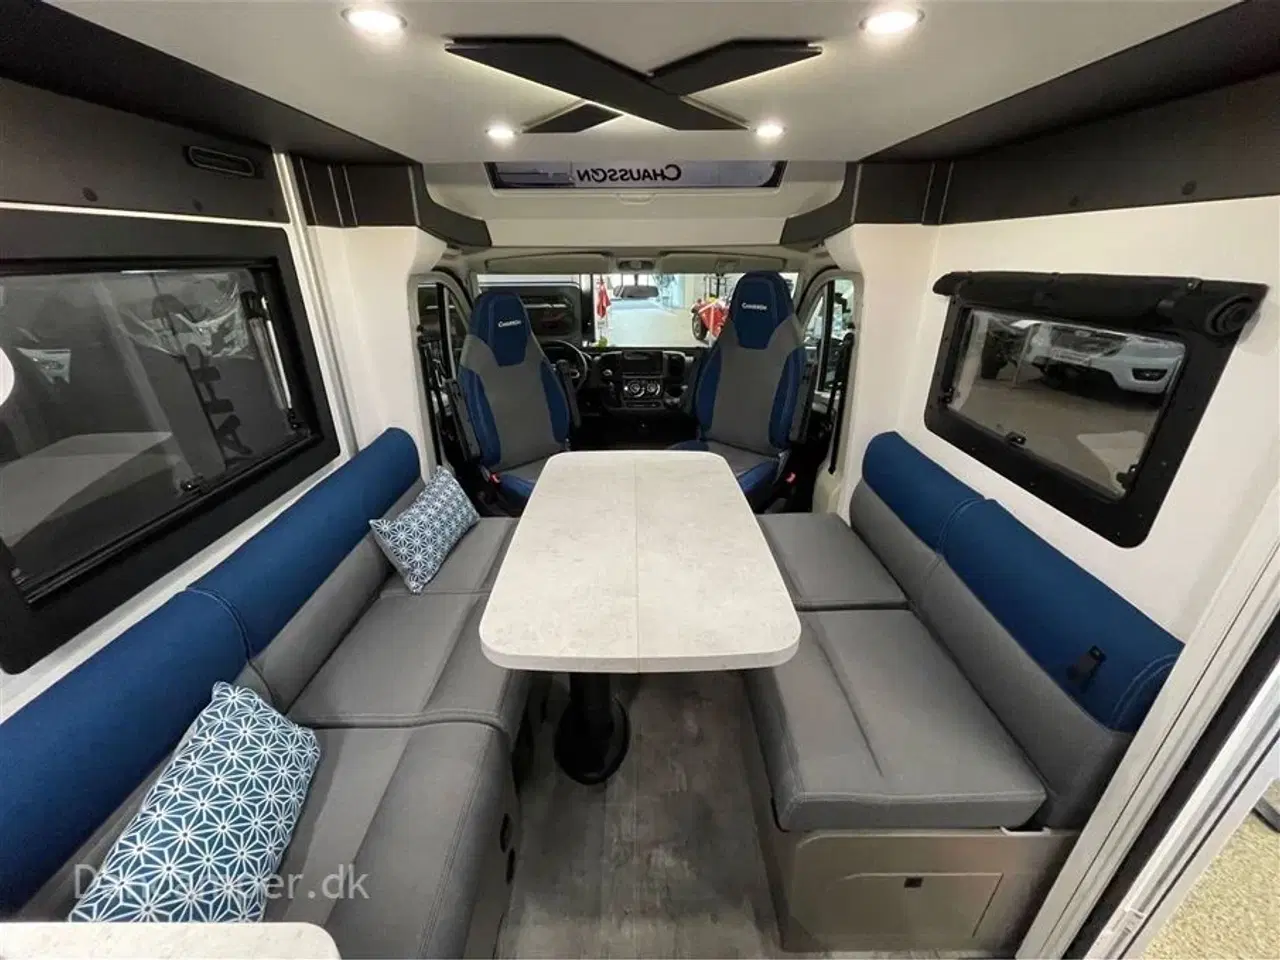 Billede 14 - 2024 - Chausson X550   Top moderne og nytænkt autocamper. Med stor Lounge og siddegruppe, sænkeseng,